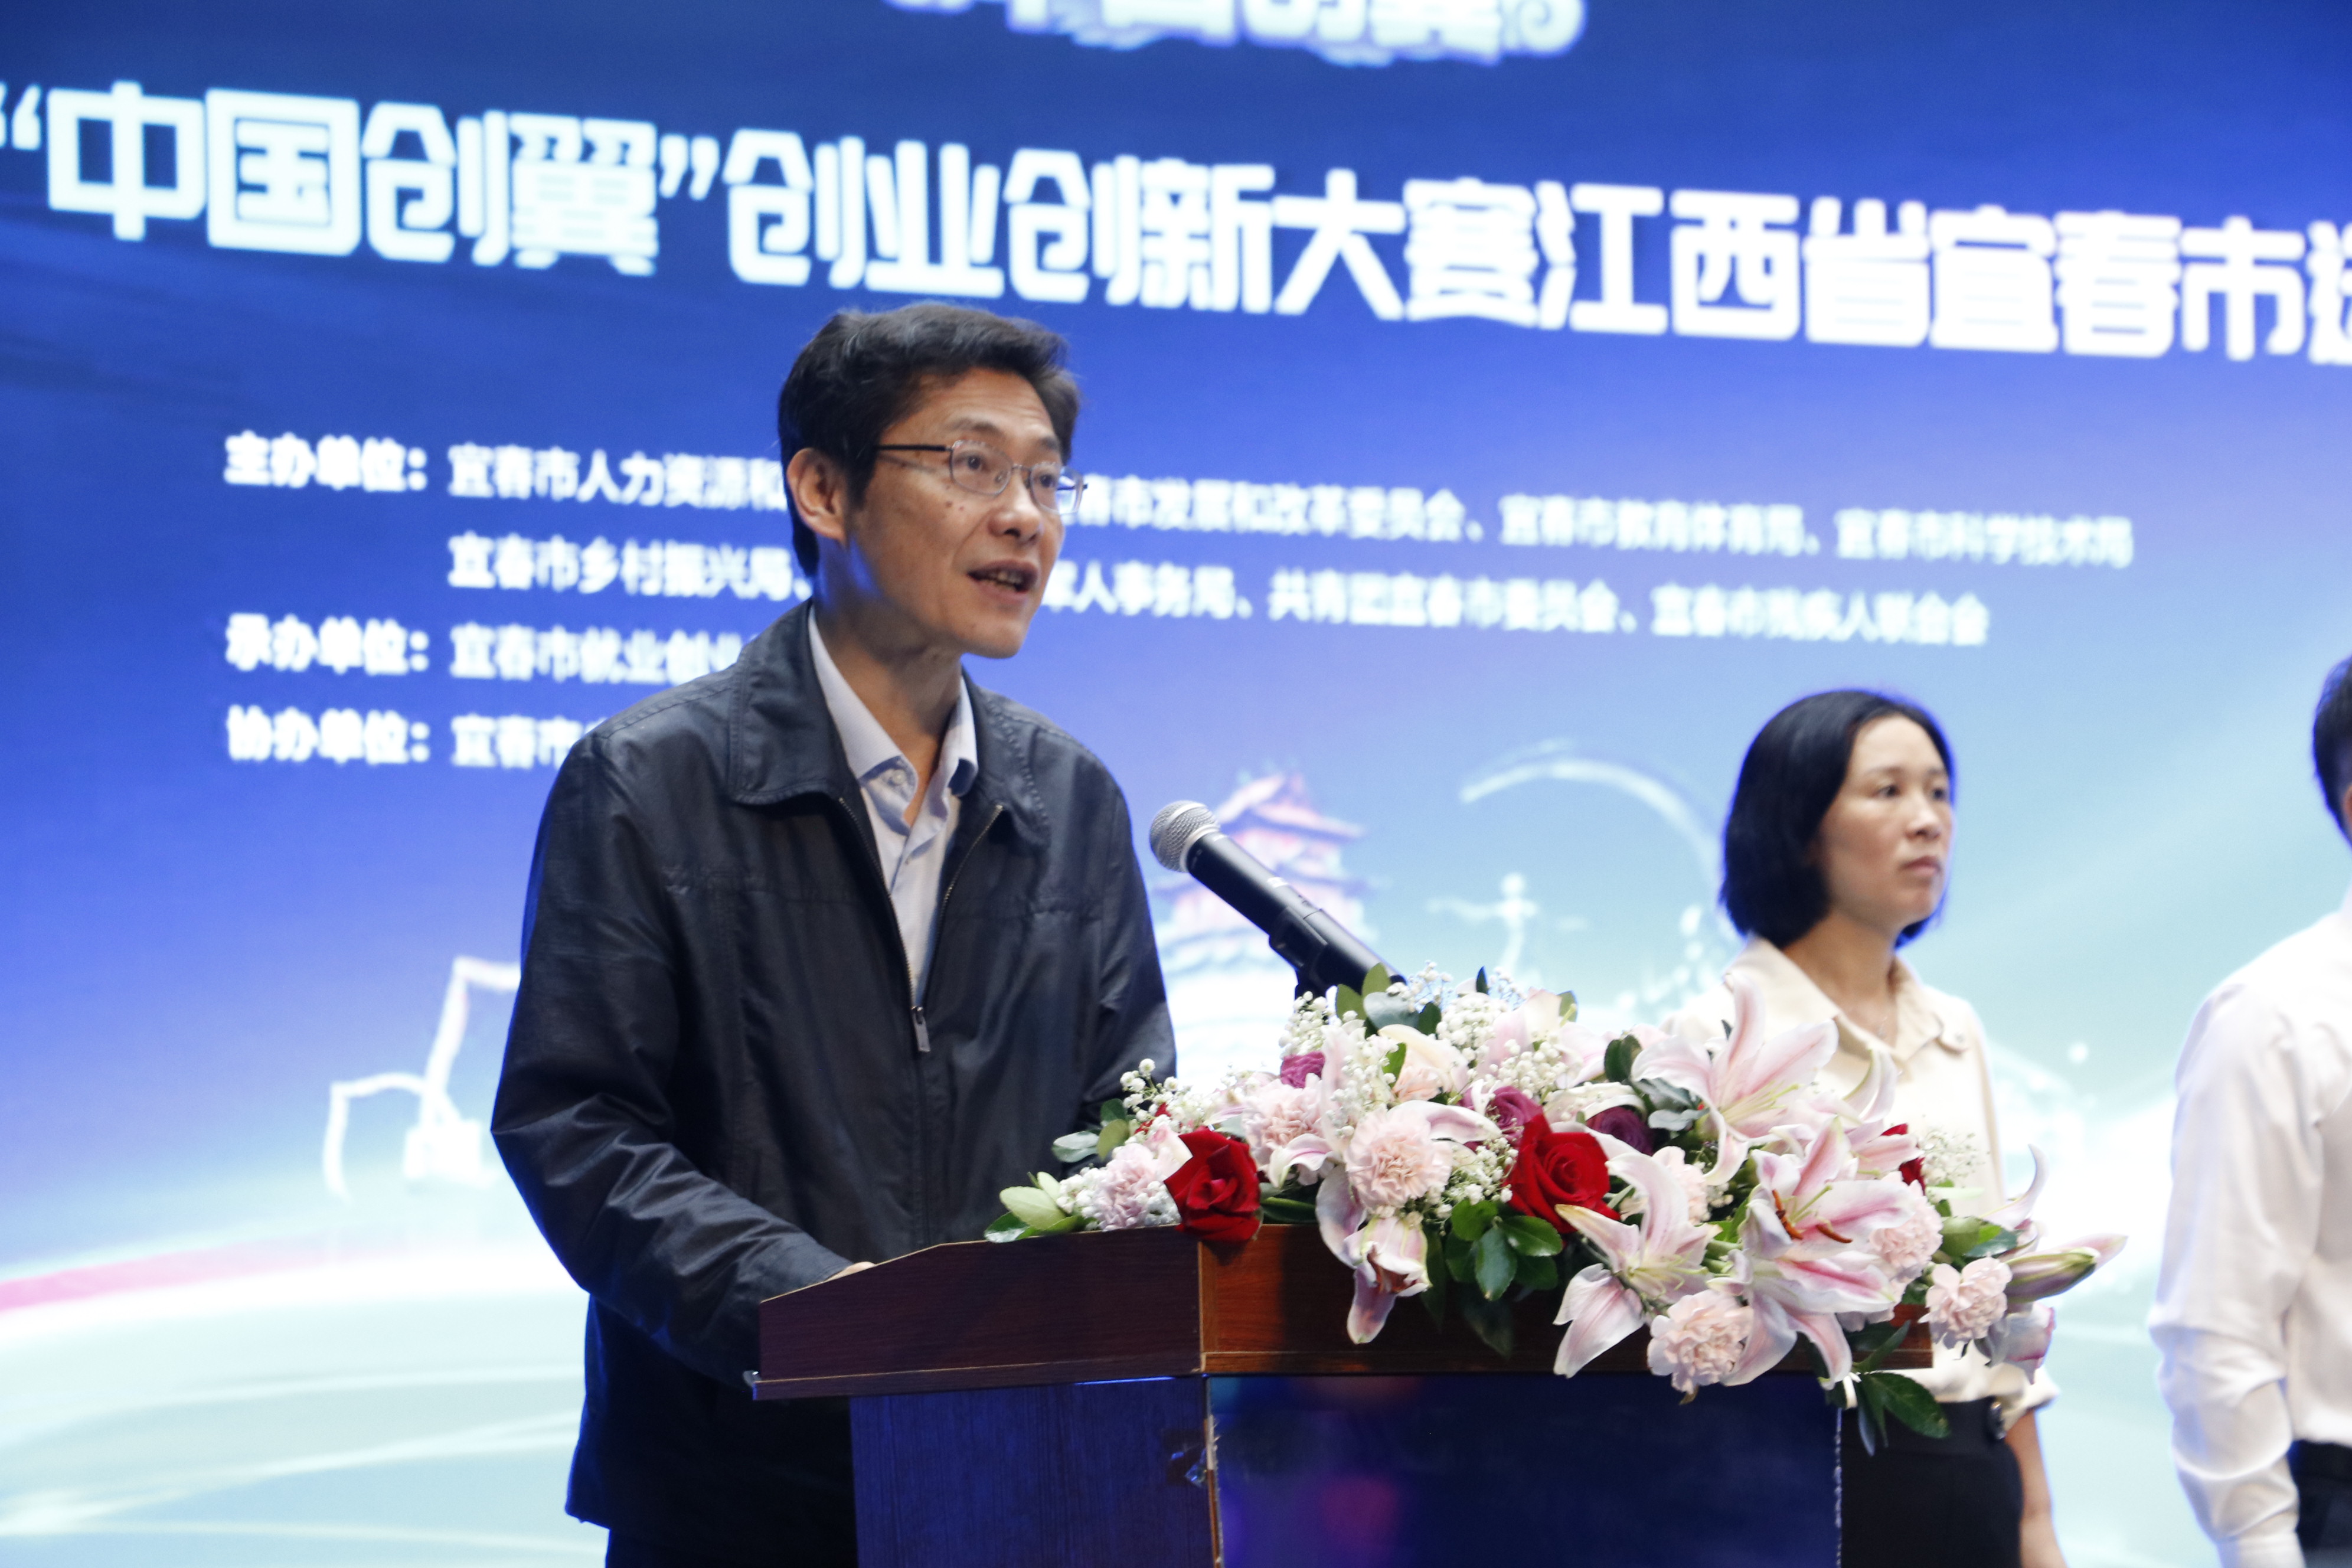 第五届“中国创翼”创业创新大赛宜春市选拔赛圆满落幕